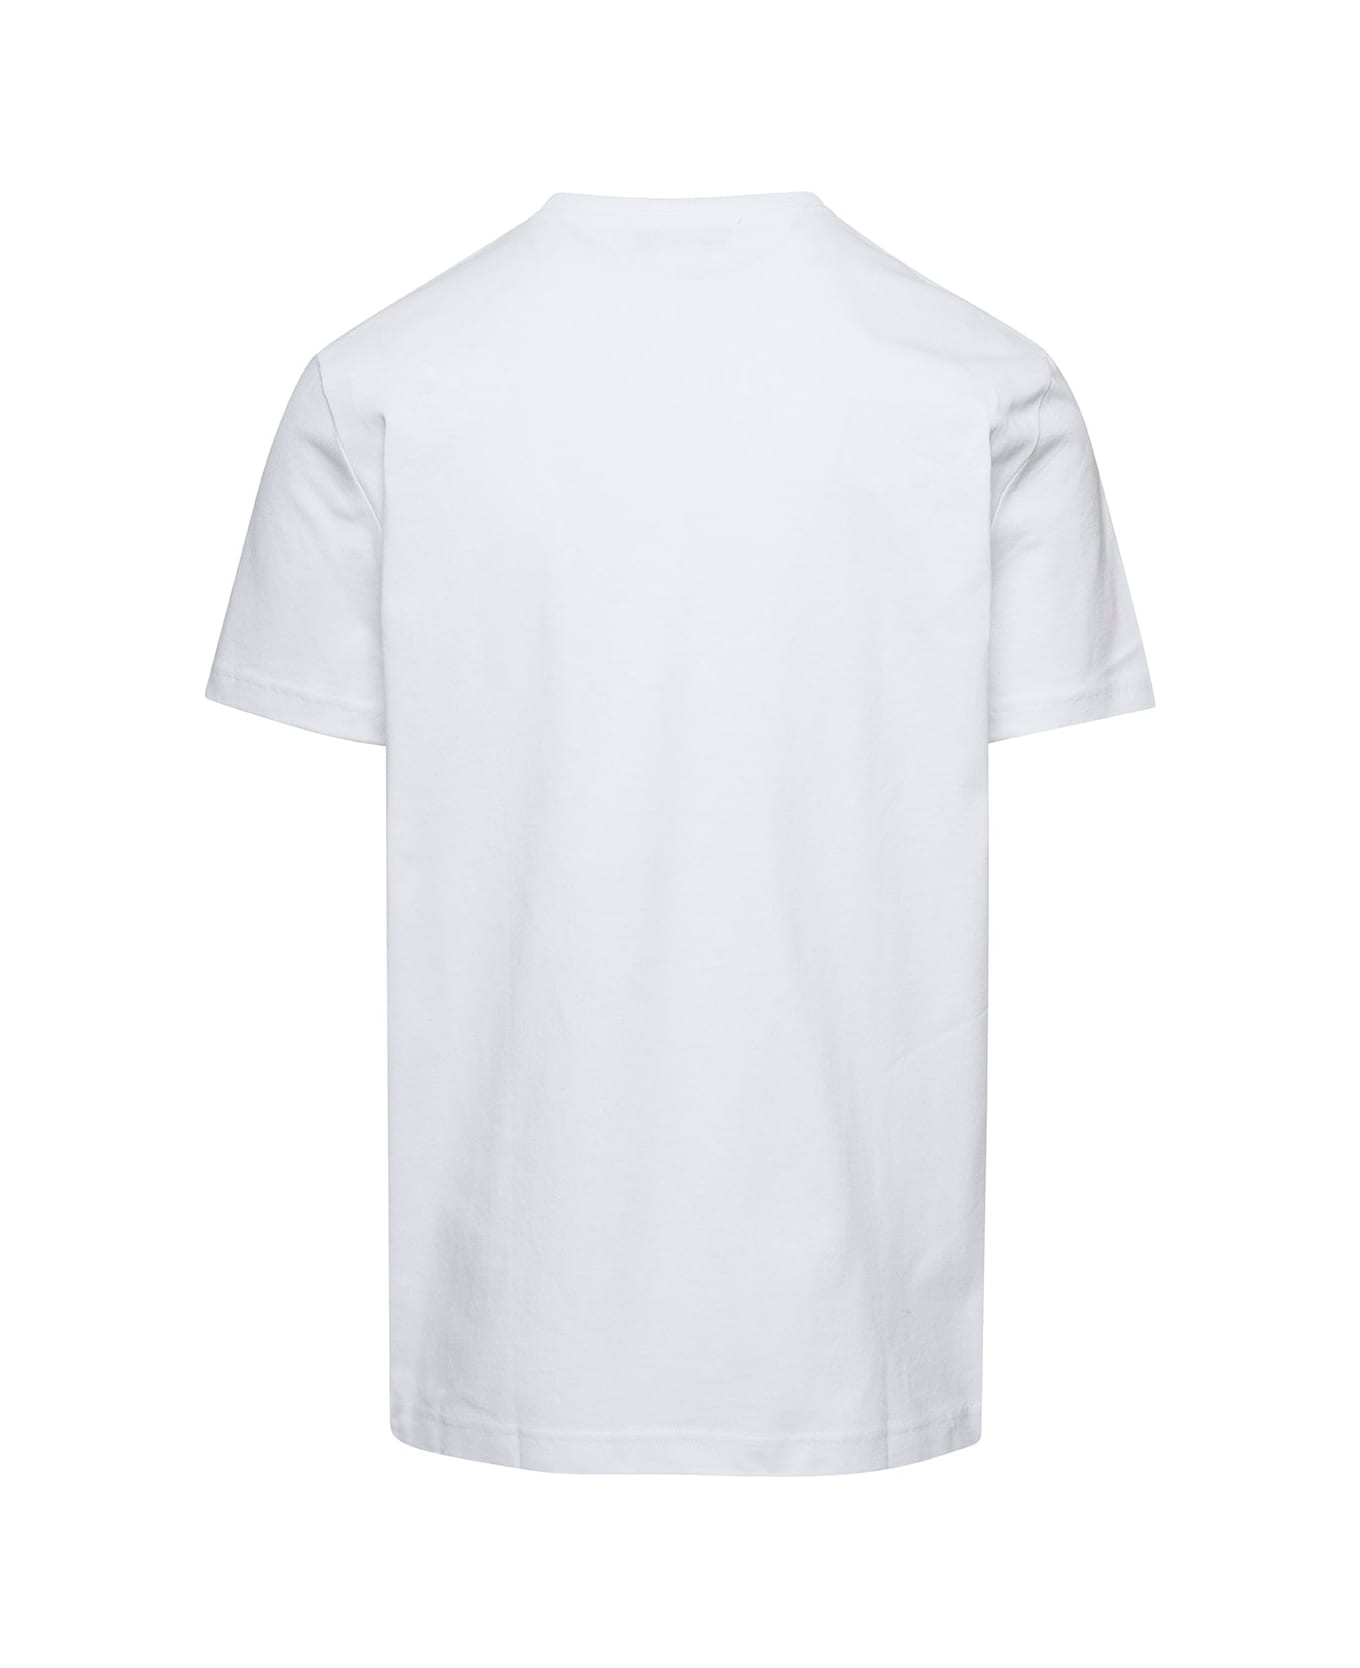 A.P.C. Anchor T-shirt - Blanc